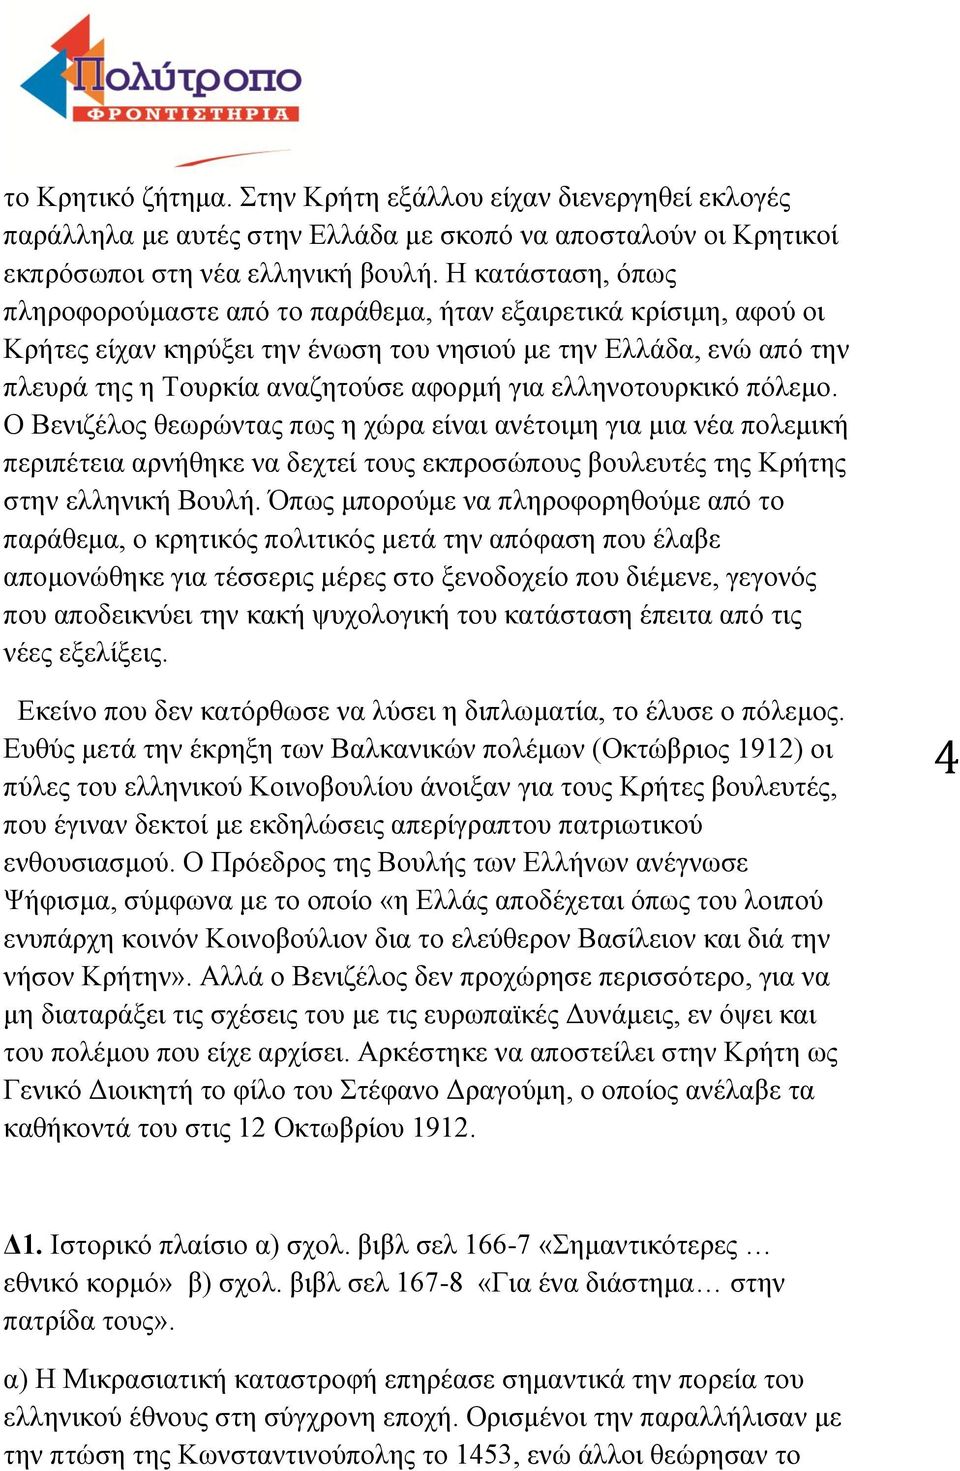 ελληνοτουρκικό πόλεμο. Ο Βενιζέλος θεωρώντας πως η χώρα είναι ανέτοιμη για μια νέα πολεμική περιπέτεια αρνήθηκε να δεχτεί τους εκπροσώπους βουλευτές της Κρήτης στην ελληνική Βουλή.